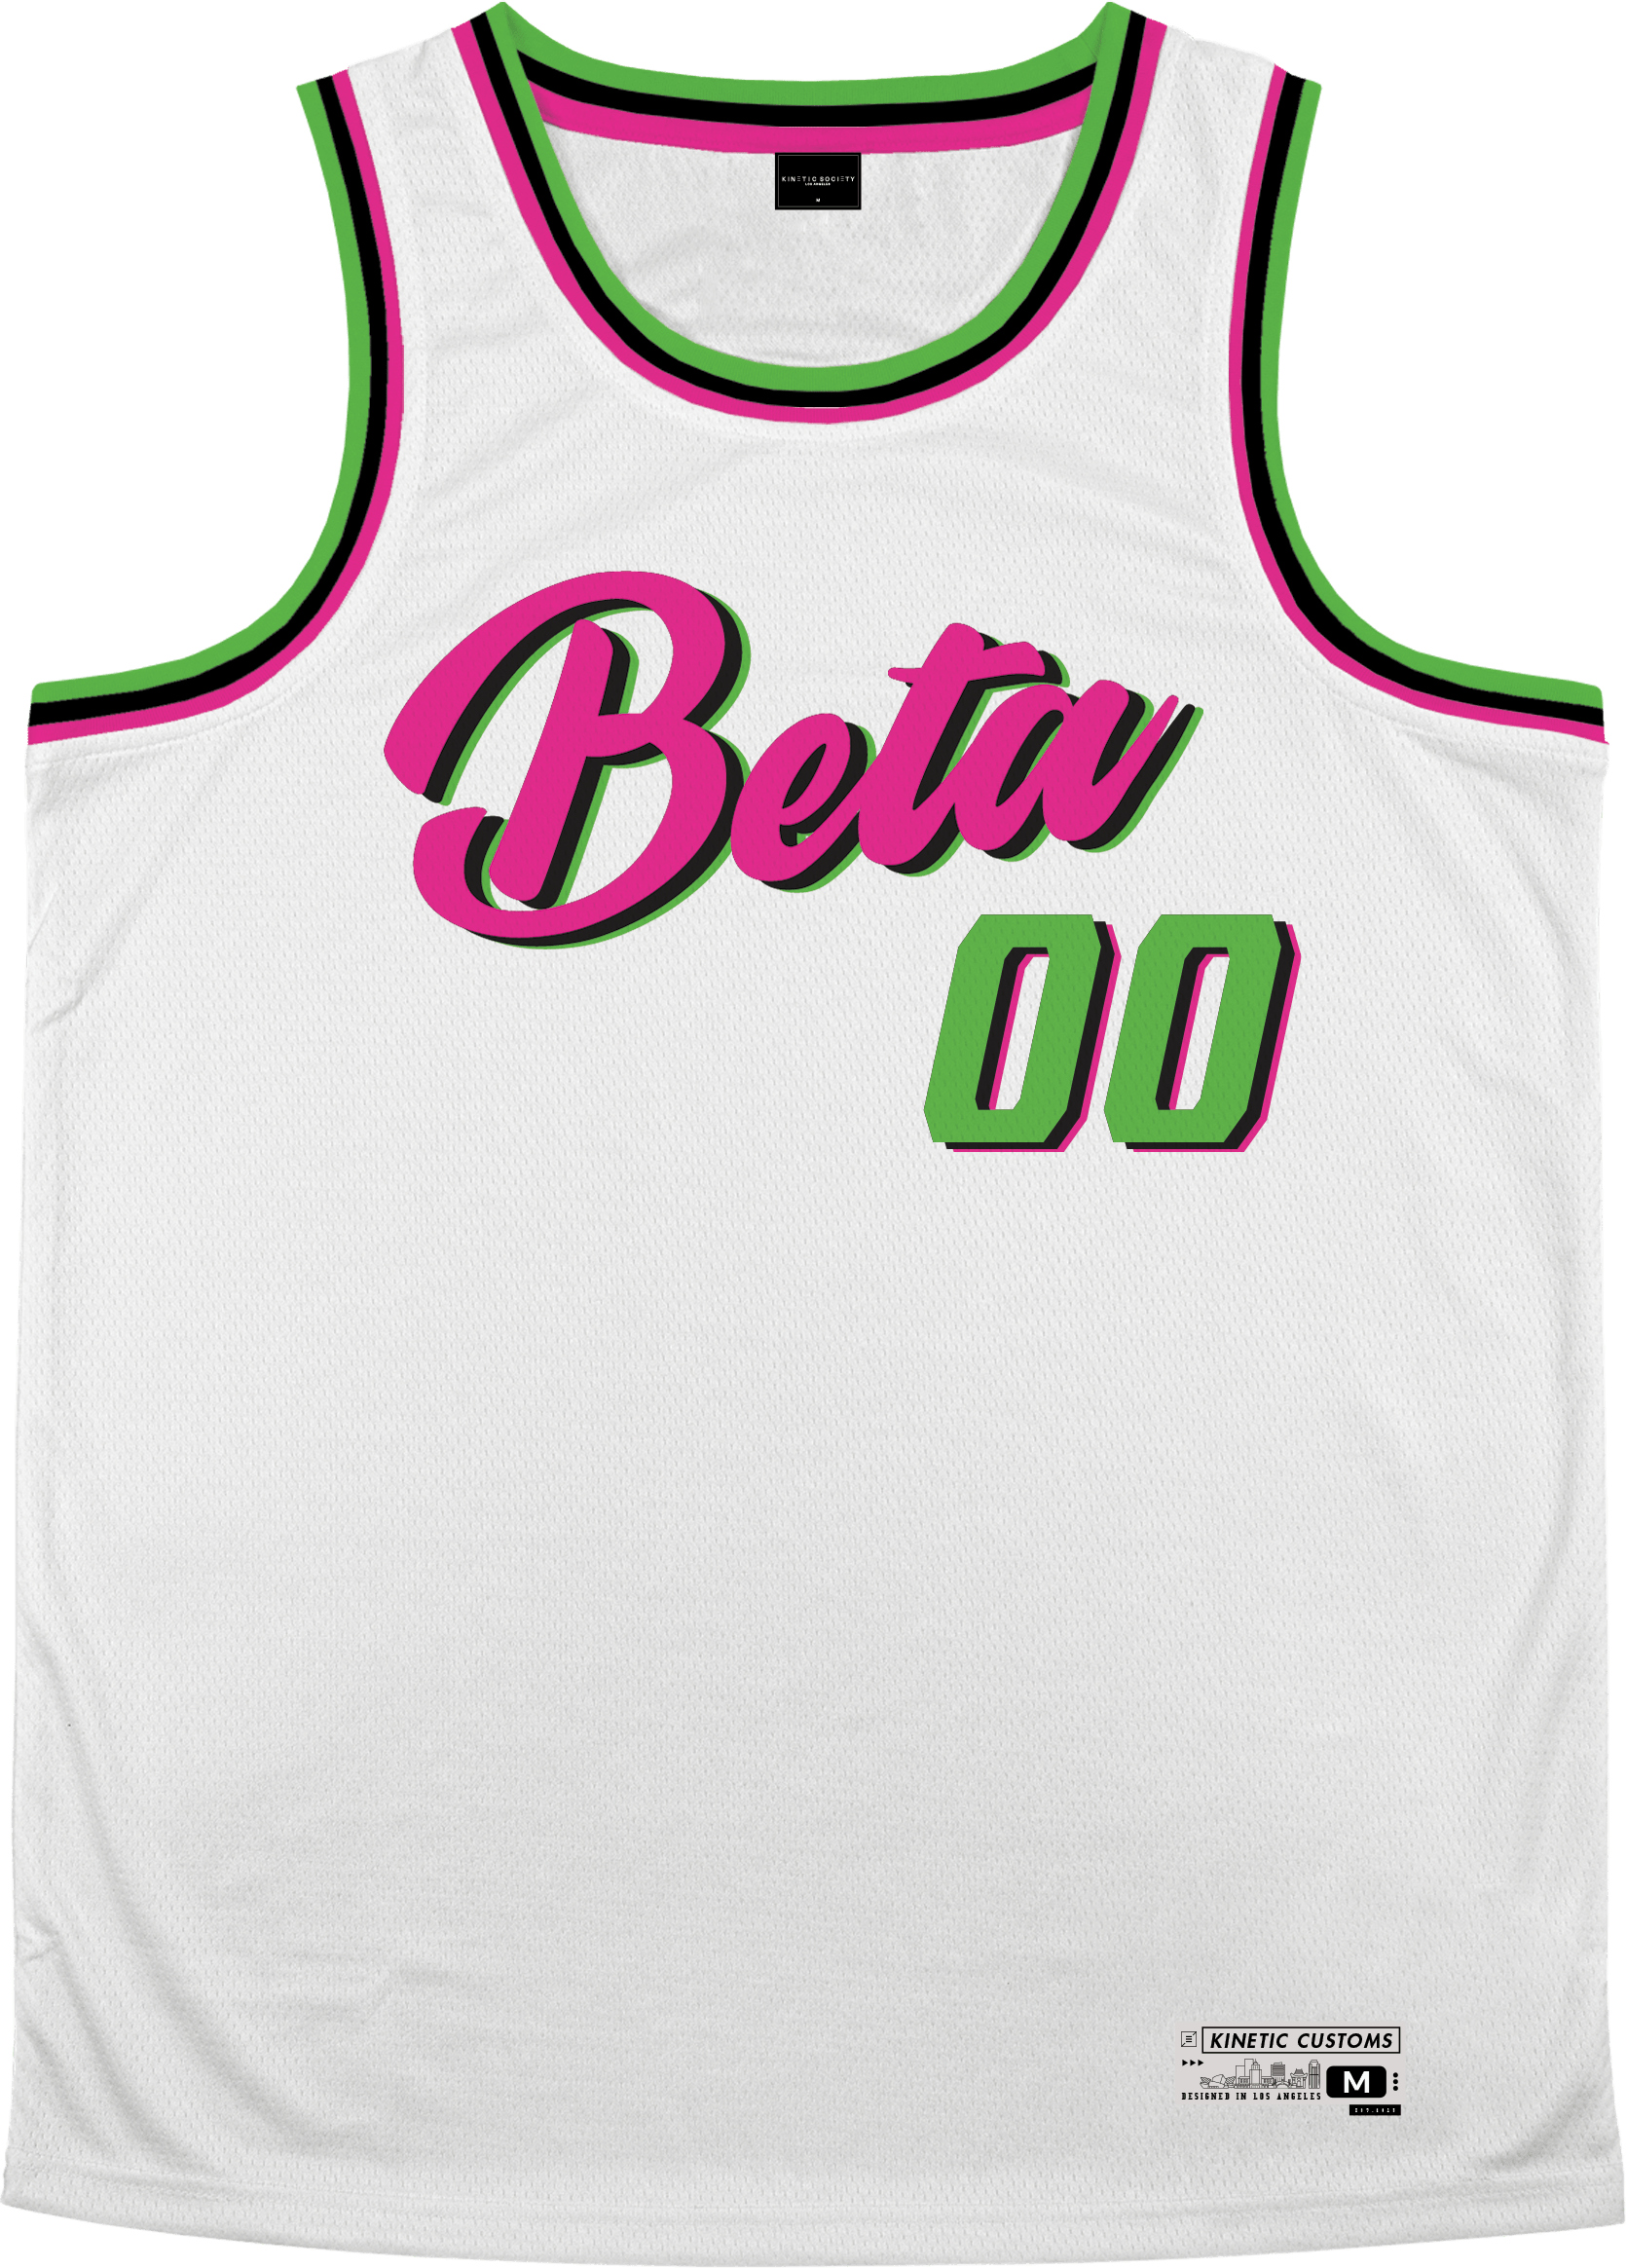 Beta Theta Pi - Bubble Gum Basketball Jersey - Kinetic Society